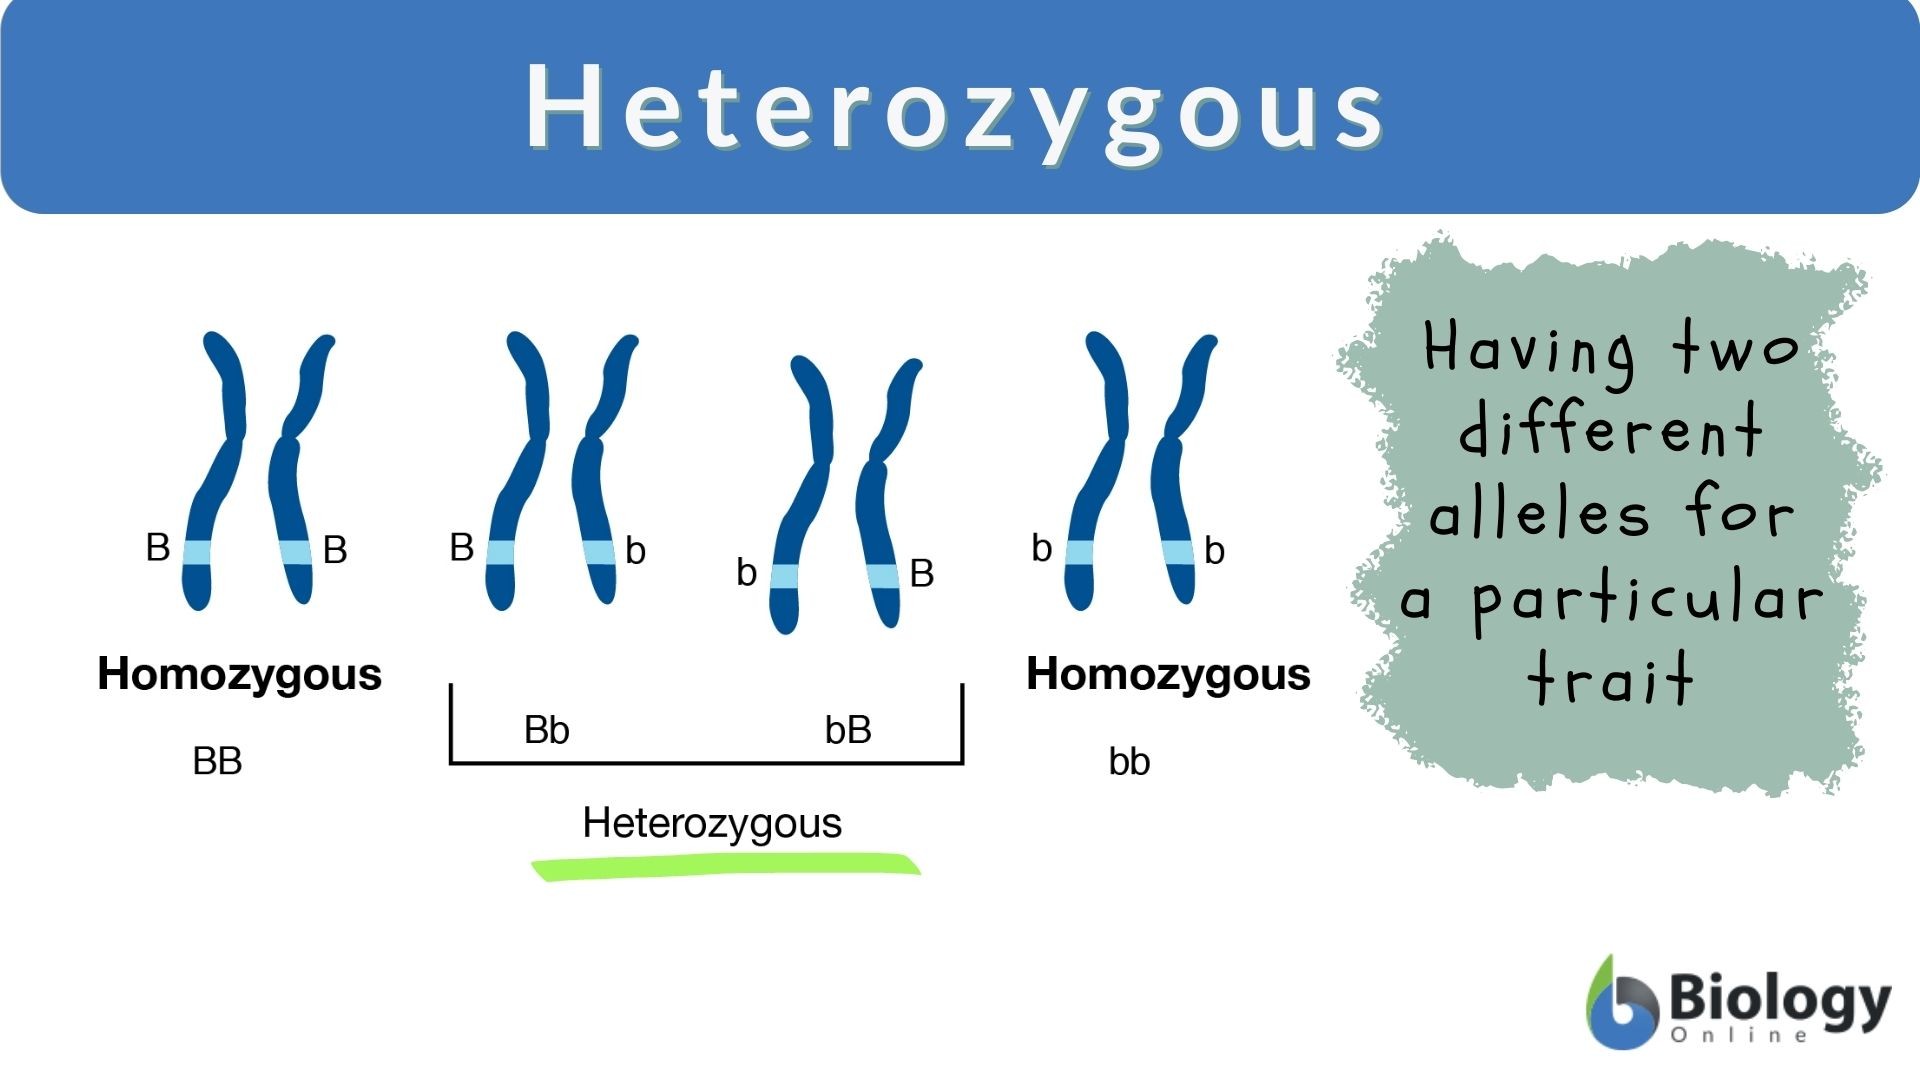 homozygous vs heterozygous